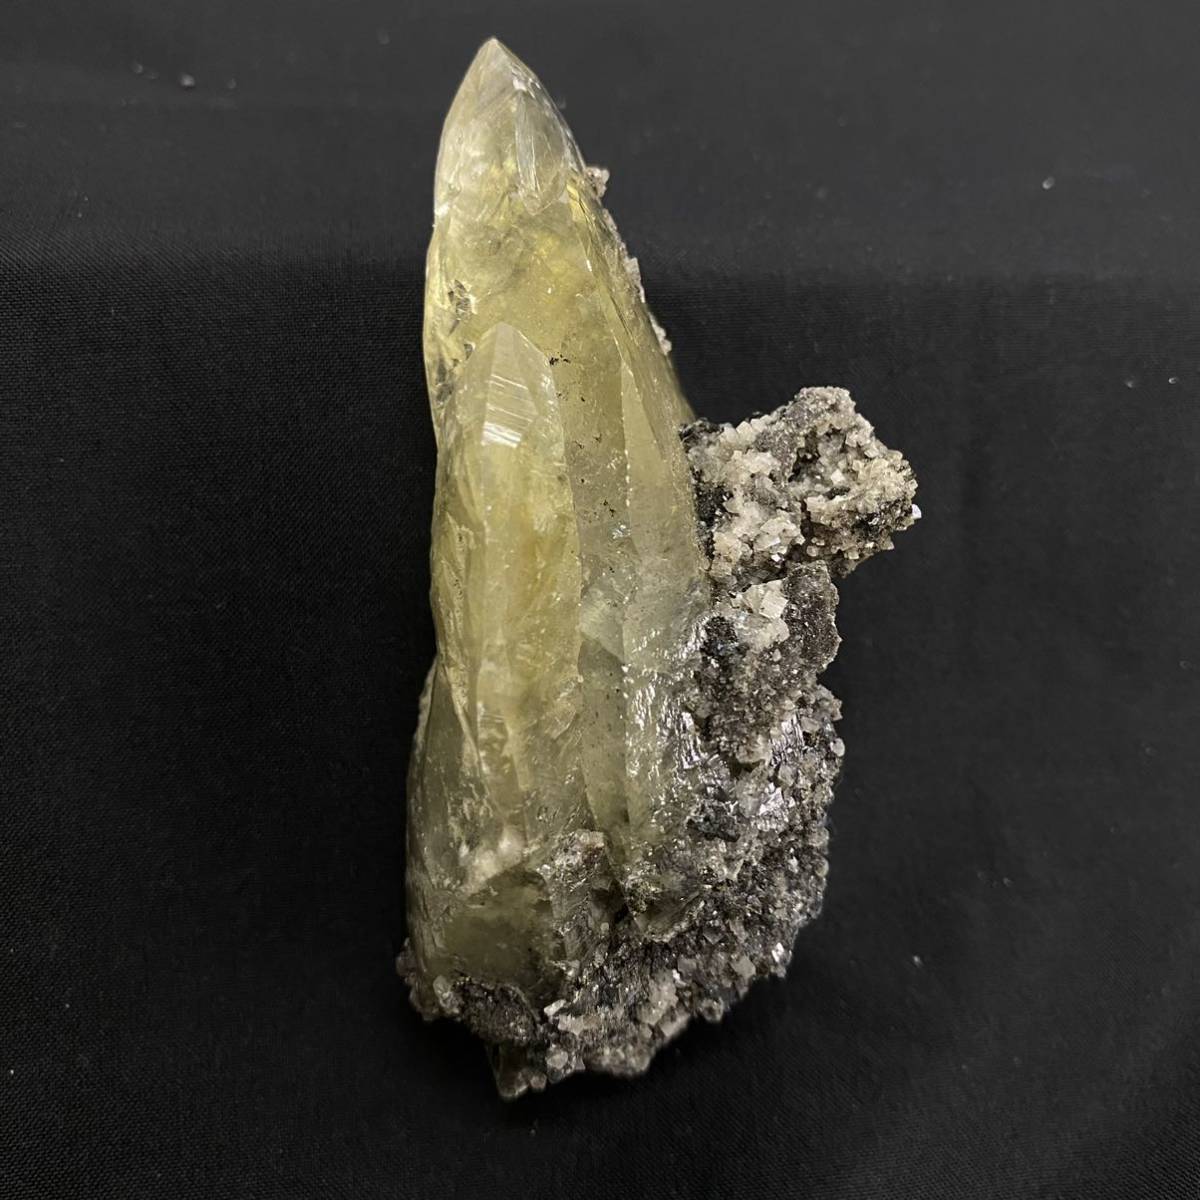 860 鉱石 原石 天然石 カルサイト 犬牙状方解石 炭酸塩鉱物 93g インド産 鉱物 黄色 _画像4